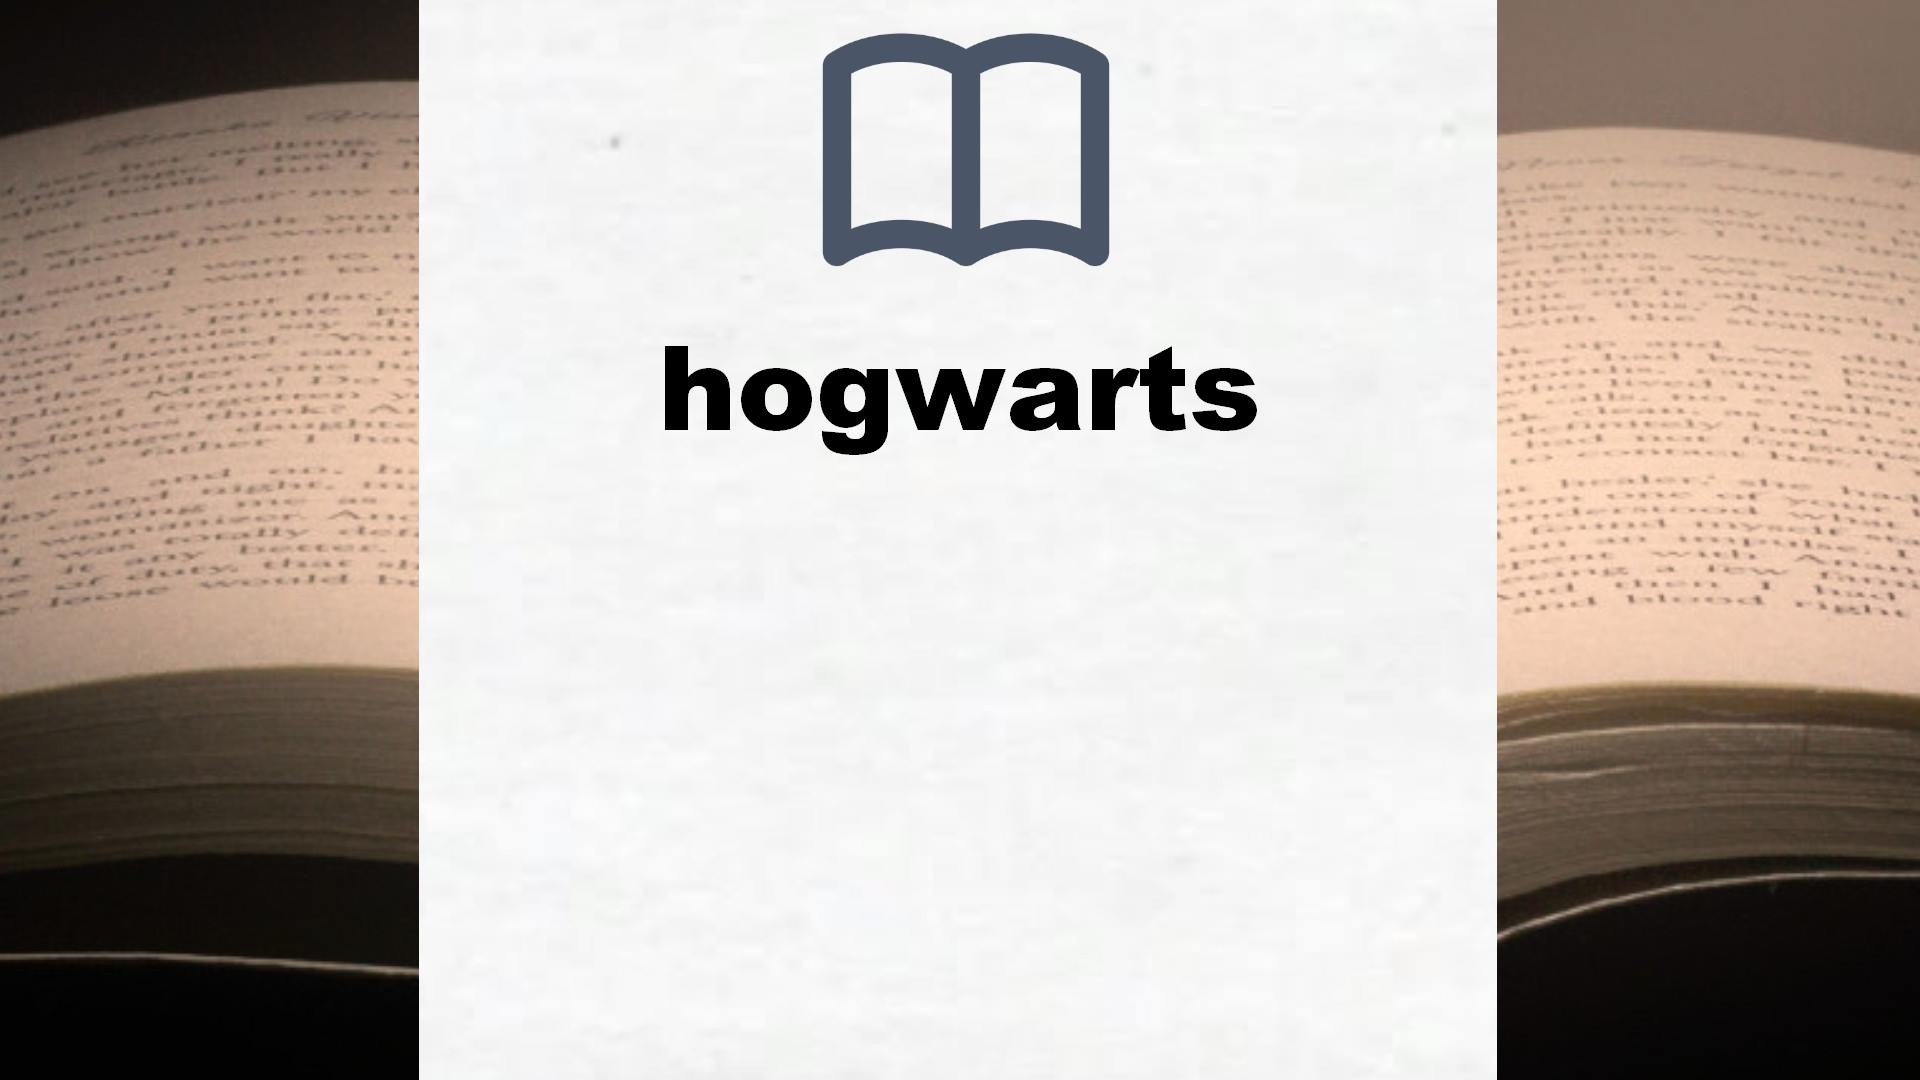 Libros sobre hogwarts